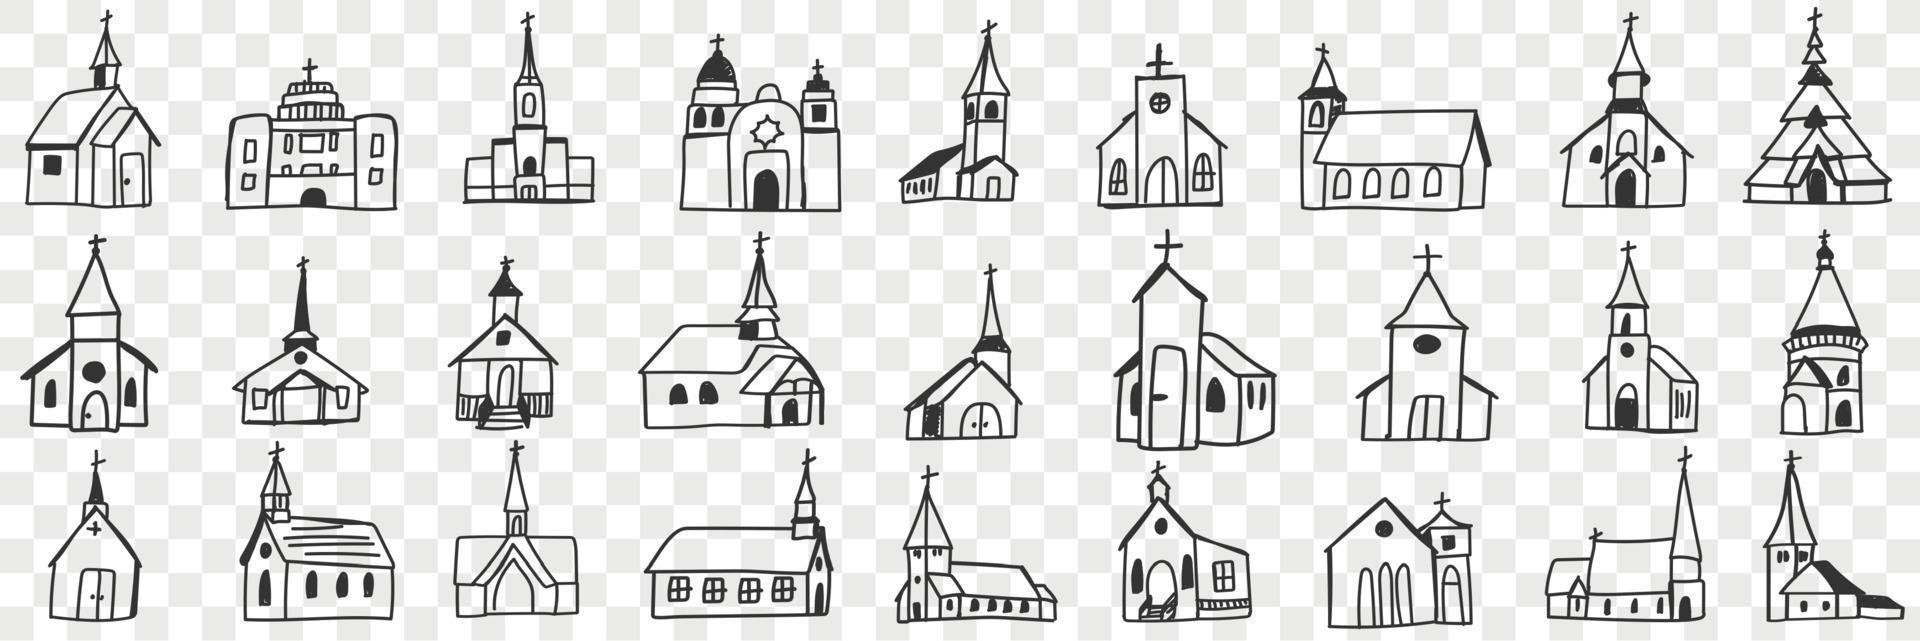 Kirche Fassaden mit Türme Gekritzel Satz. Sammlung von Hand gezeichnet verschiedene Fassaden von religiös Kirchen Gebäude isoliert auf transparent Hintergrund vektor